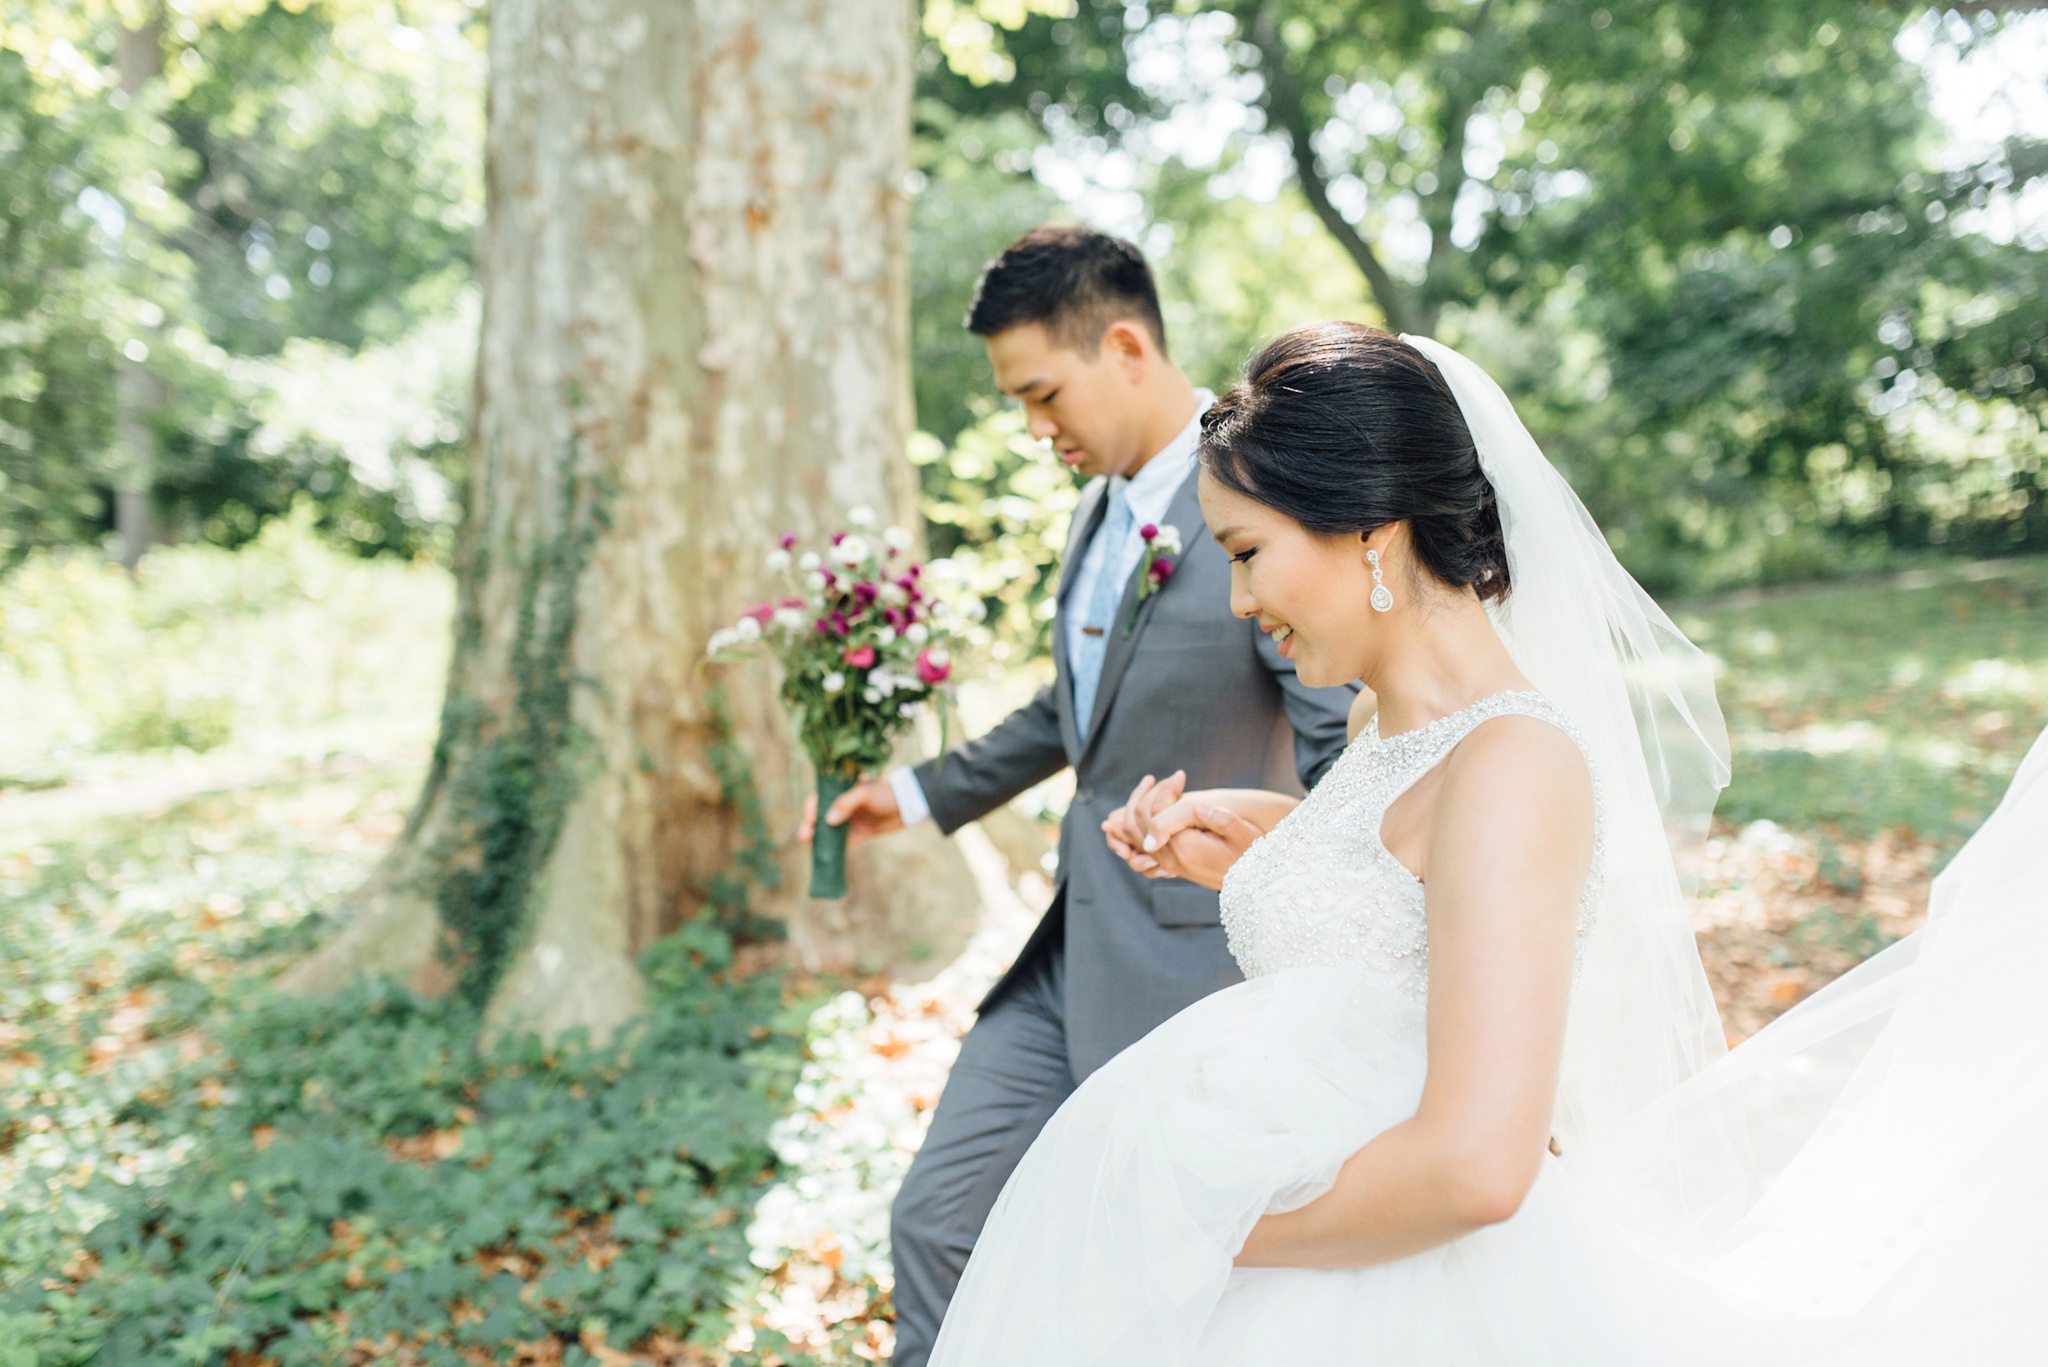 Moon + Nina - Bartram's Garden Wedding - Philadelphia Wedding Photographer - Alison Dunn Photography photo-43